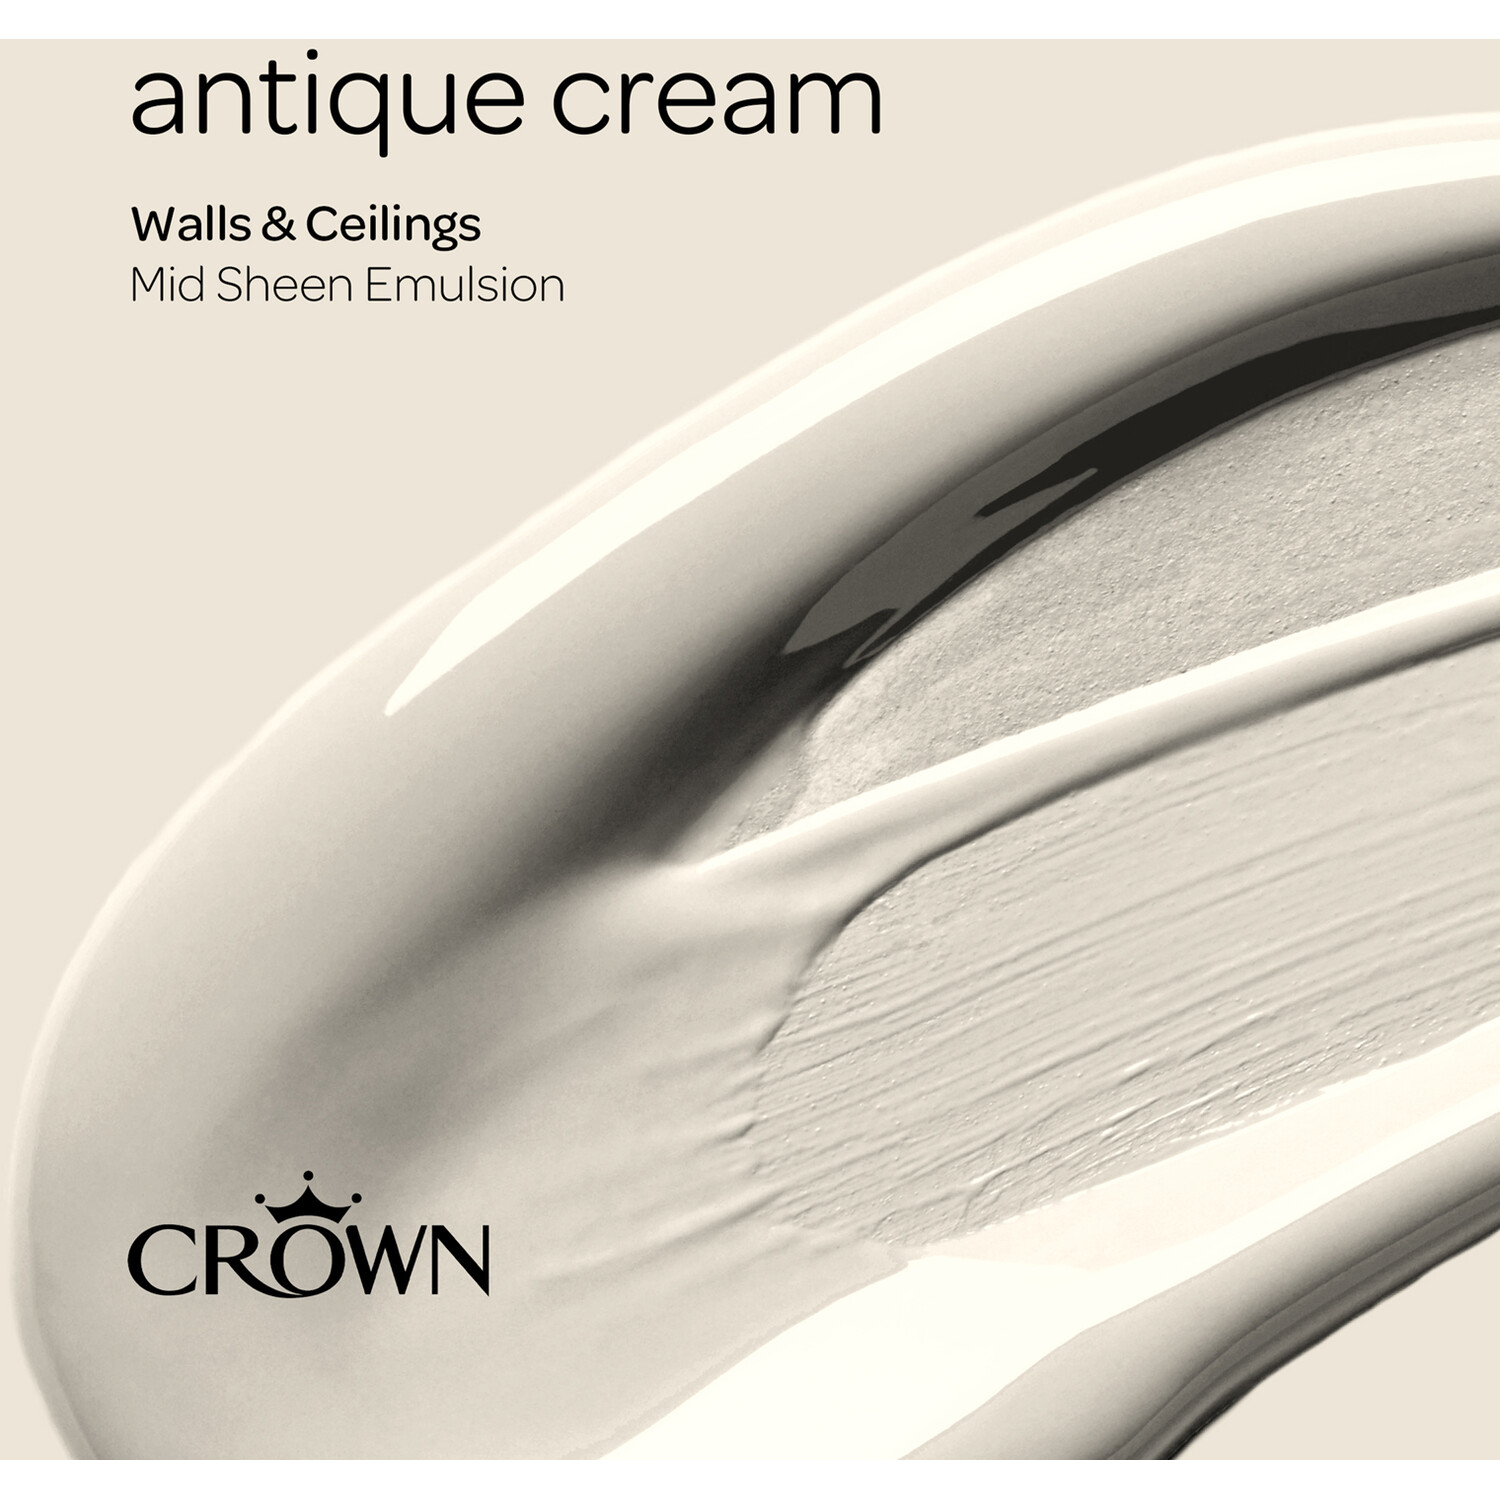 Crown Walls & Ceilings Antique Cream Mid Sheen Emulsion Paint 5L Image 4